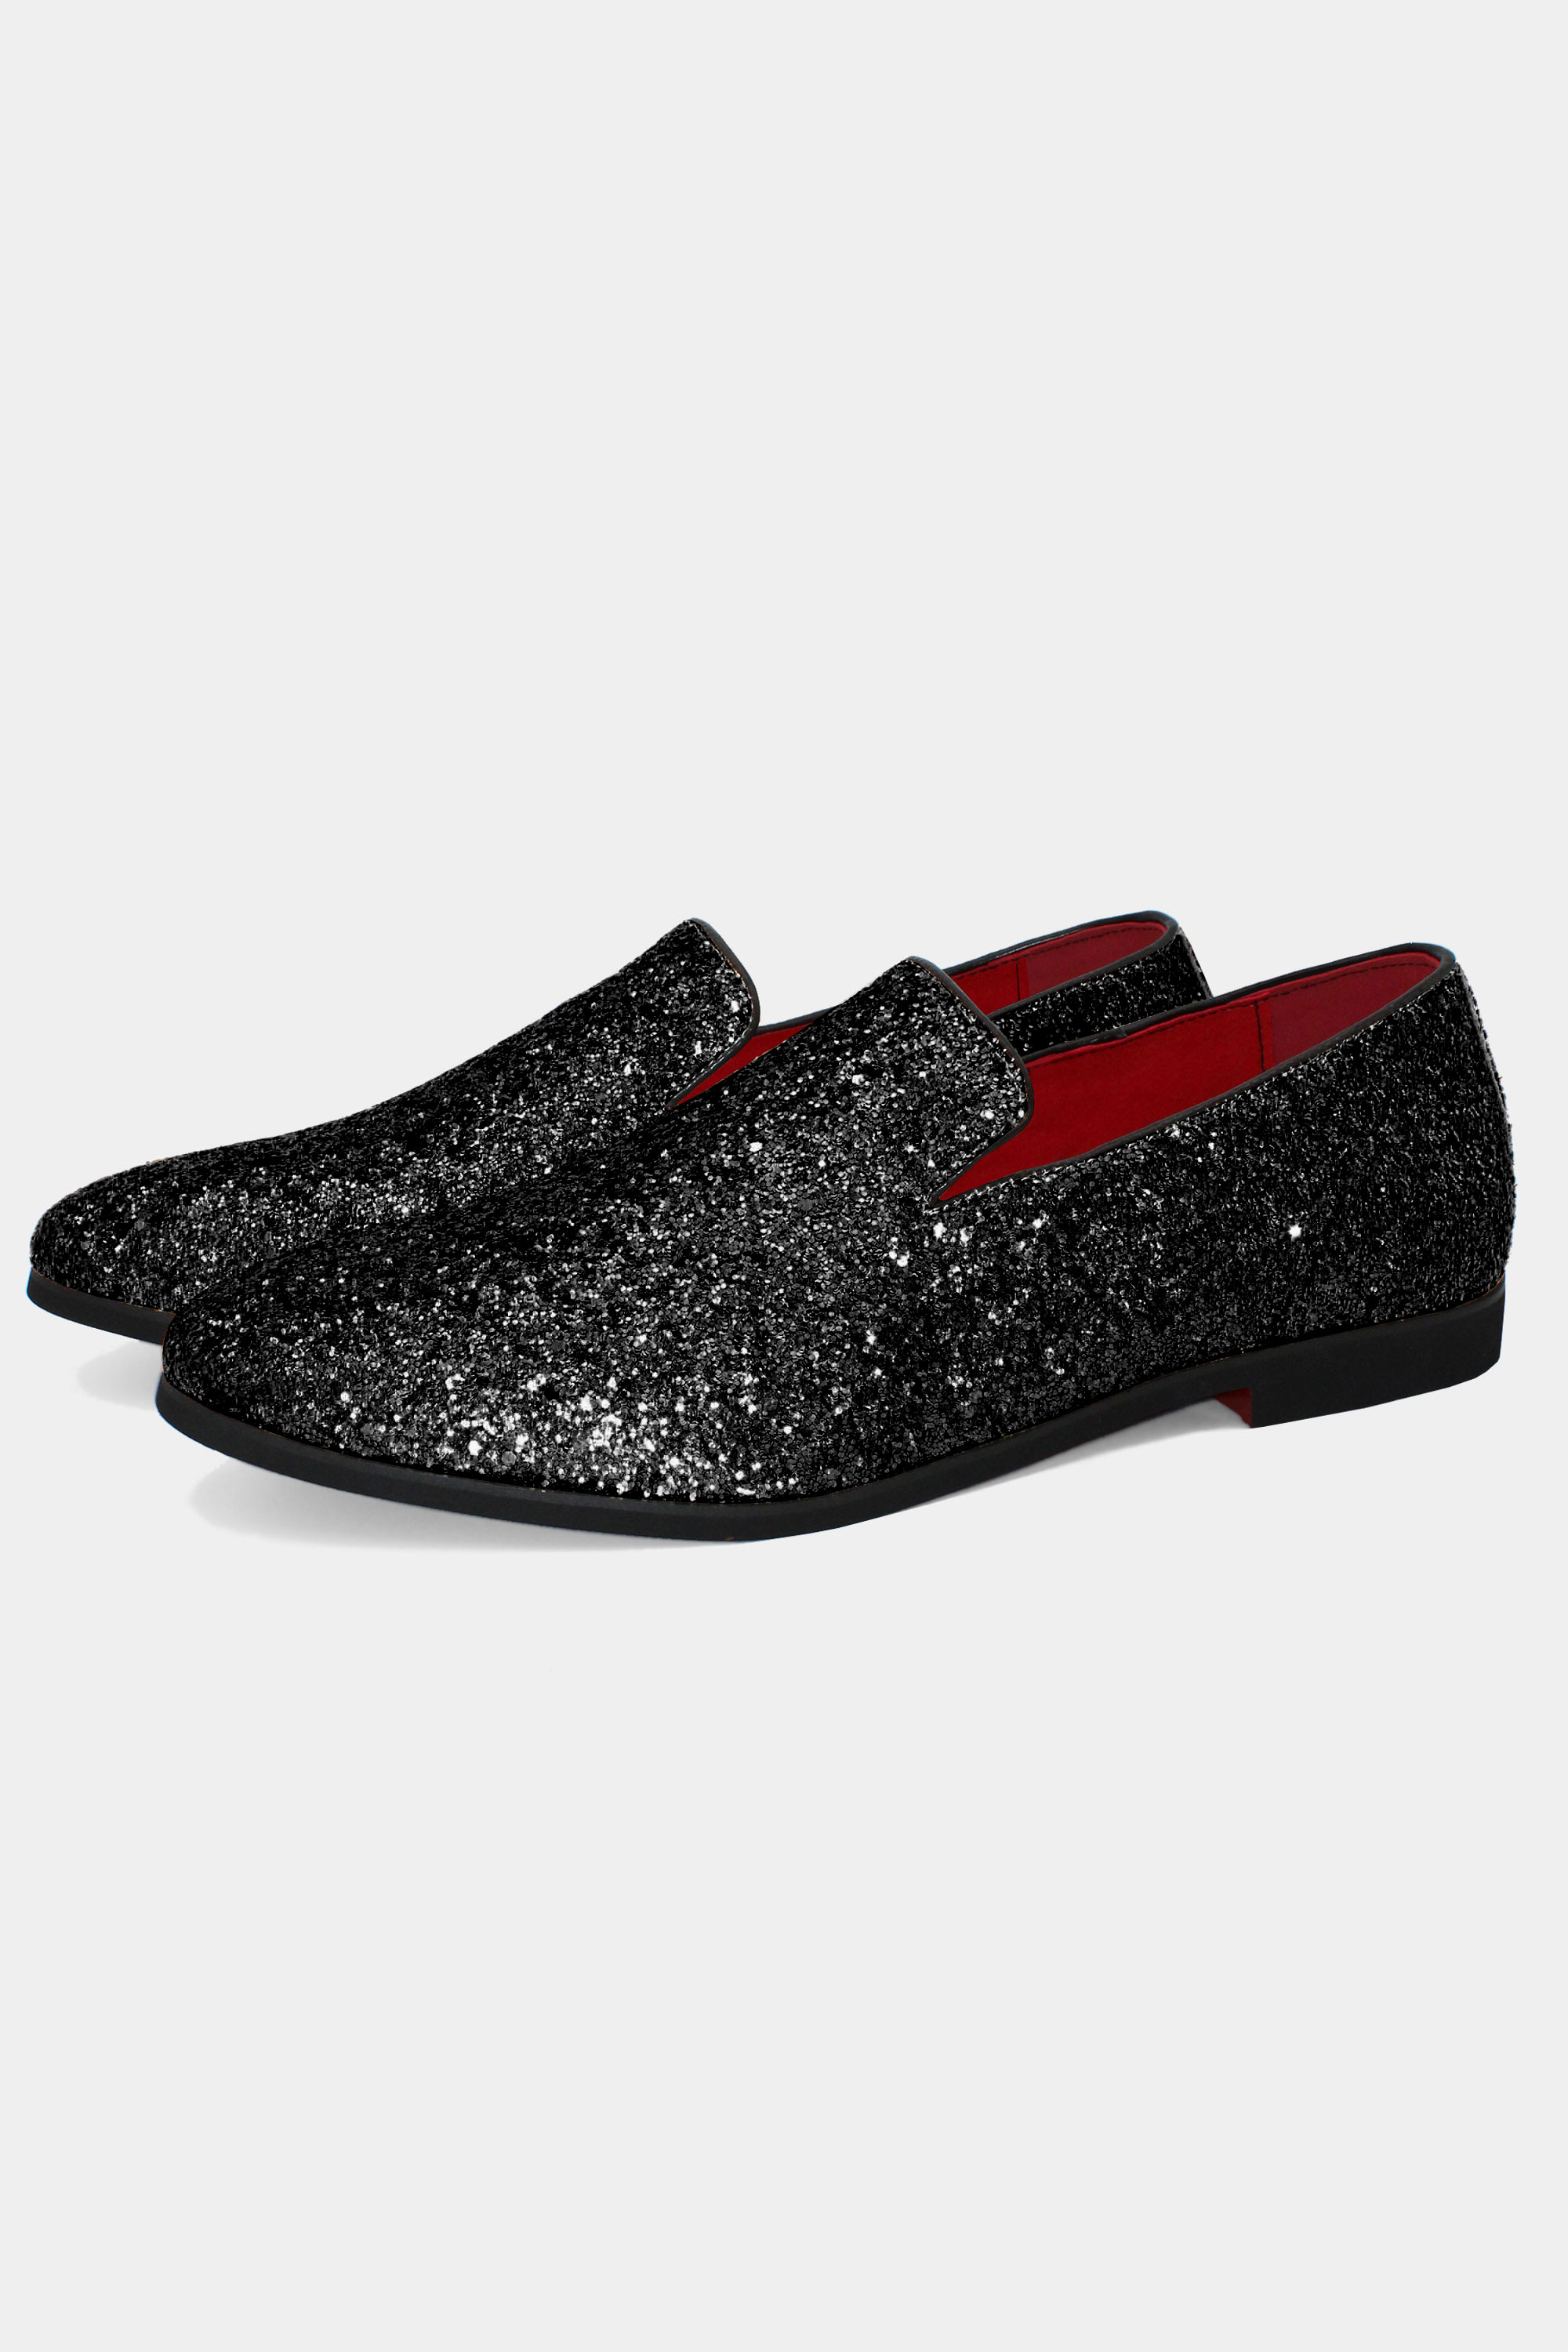 Mens-Black-Glitter-Shoes-Loafer-Groom-Wedding-Shoes-from-Gentlemansguru.com